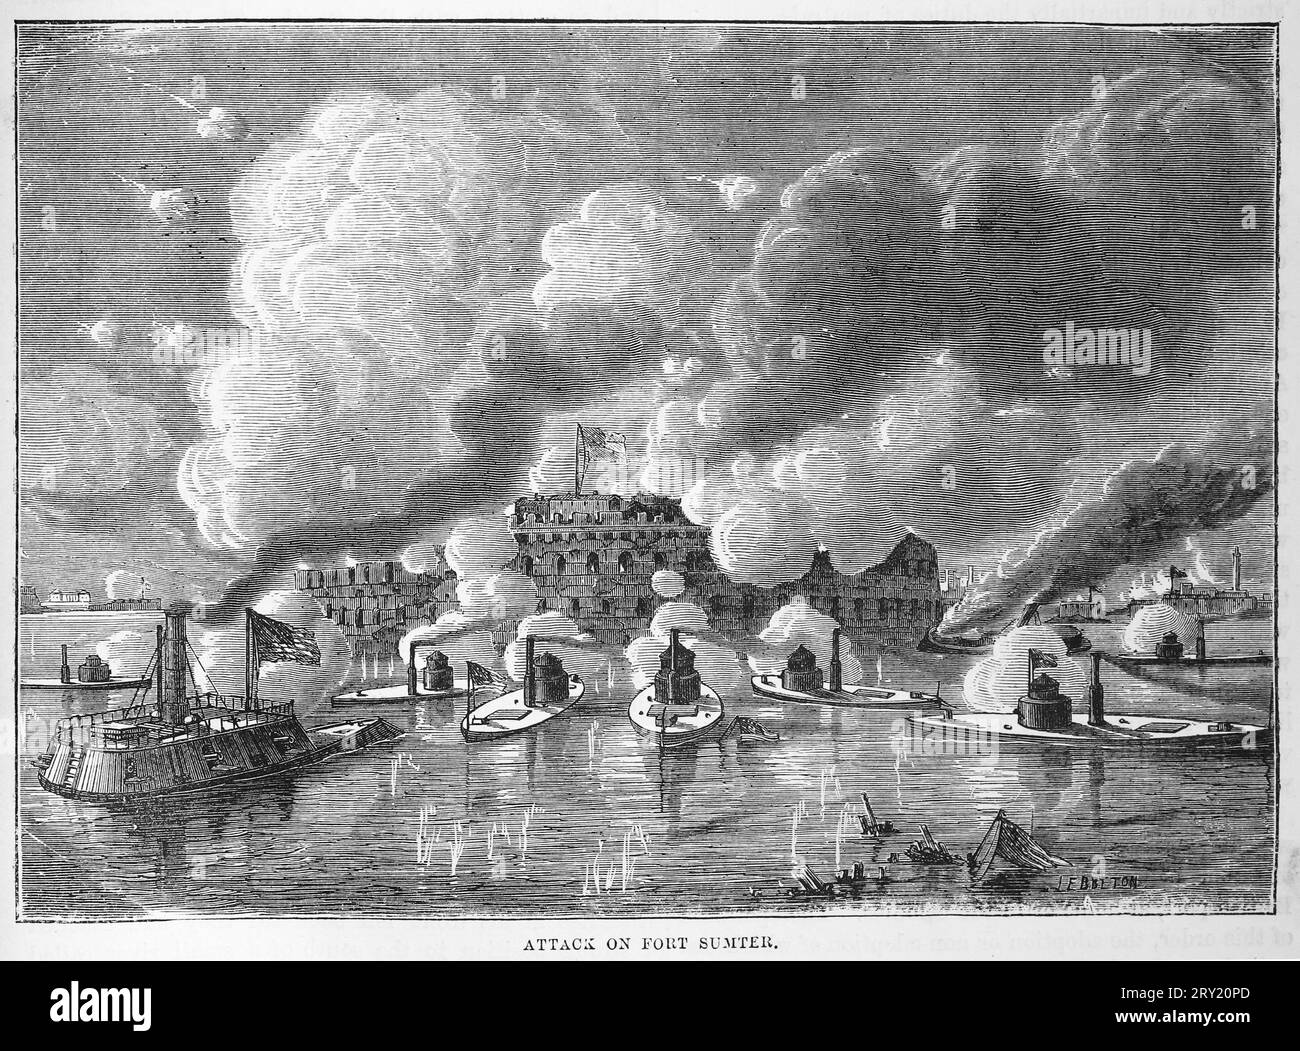 Angriff auf Fort Sumter durch die Miliz von South Carolina, Beginn des Amerikanischen Bürgerkriegs, 1860. Schwarz-weiß-Abbildung Stockfoto